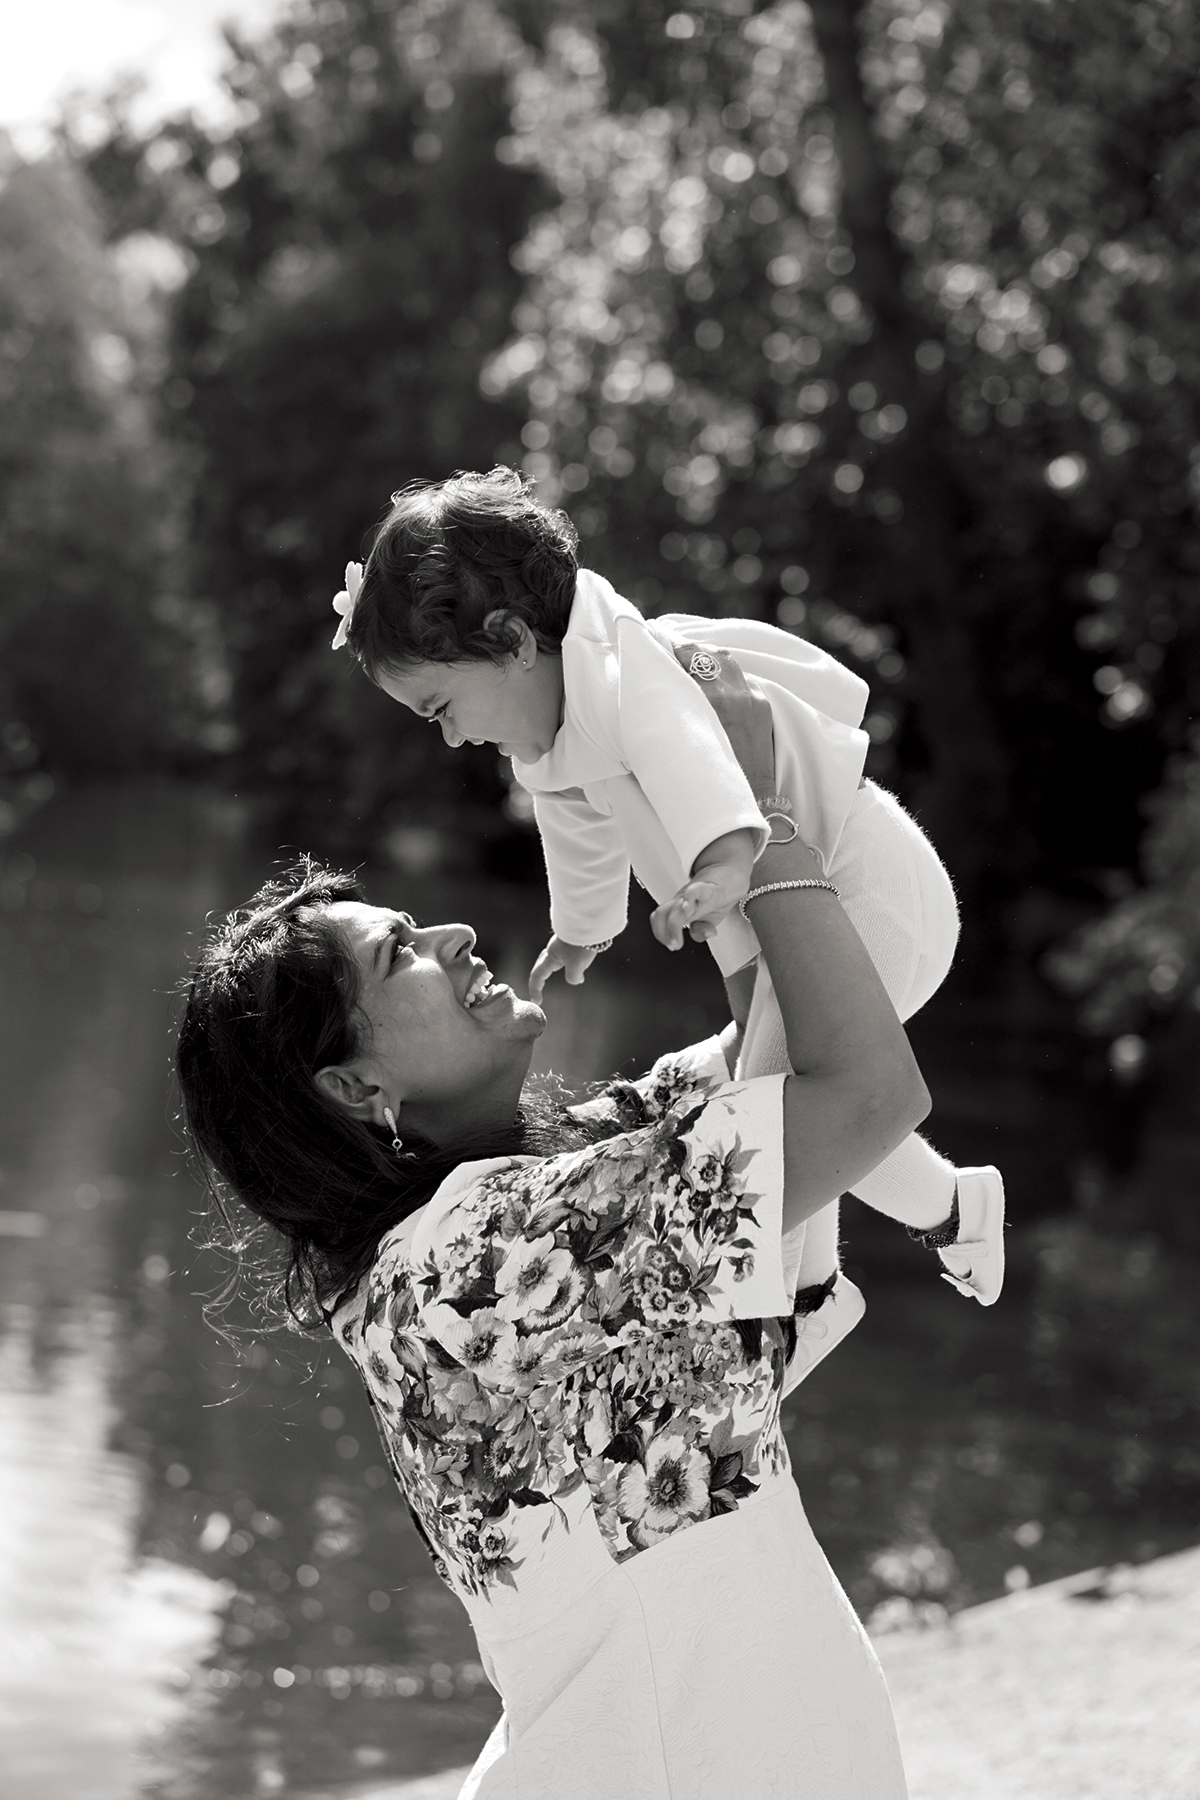 Shristi Mittal holding baby